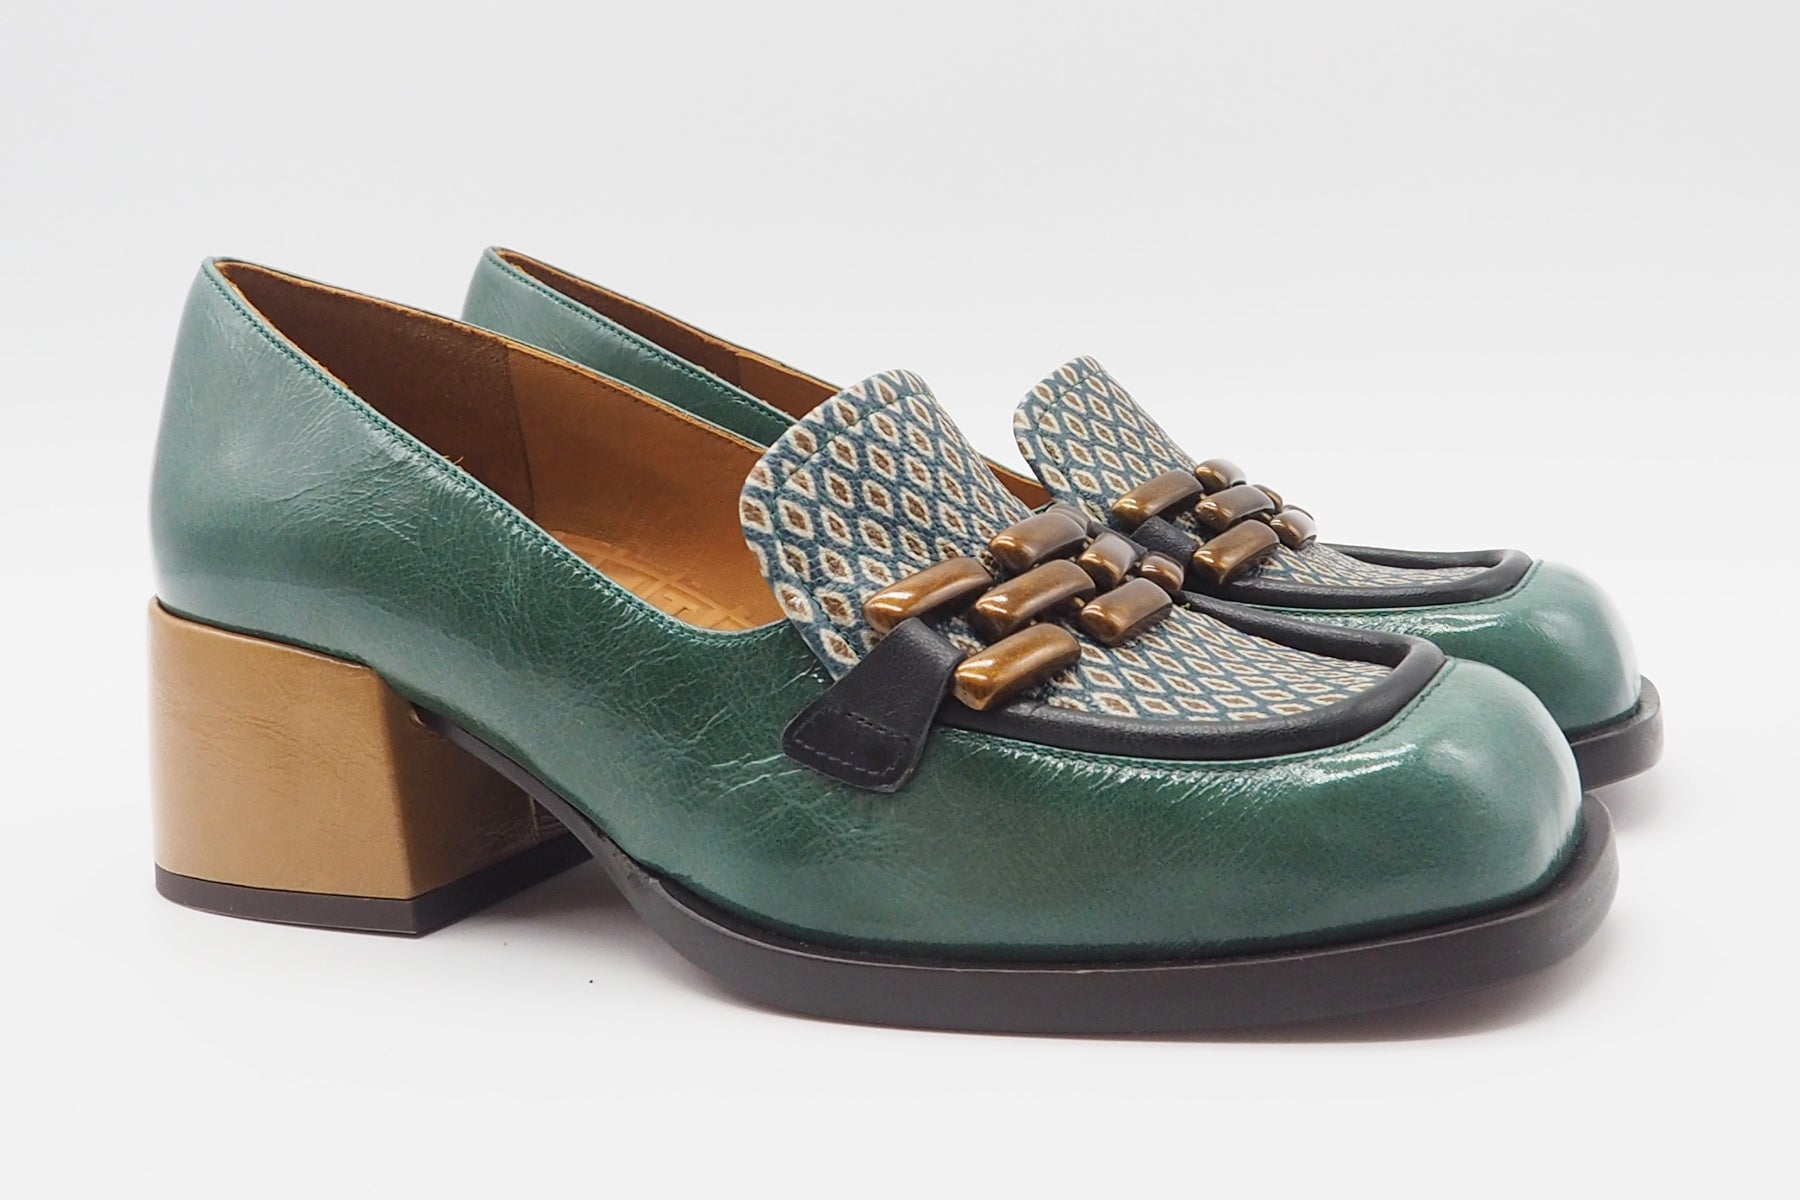 Damen Loafer aus Leder & bedrucktem Leder in Grün - Absatz 5cm - Bydu Damen Loafers & Schnürer Chie Mihara 